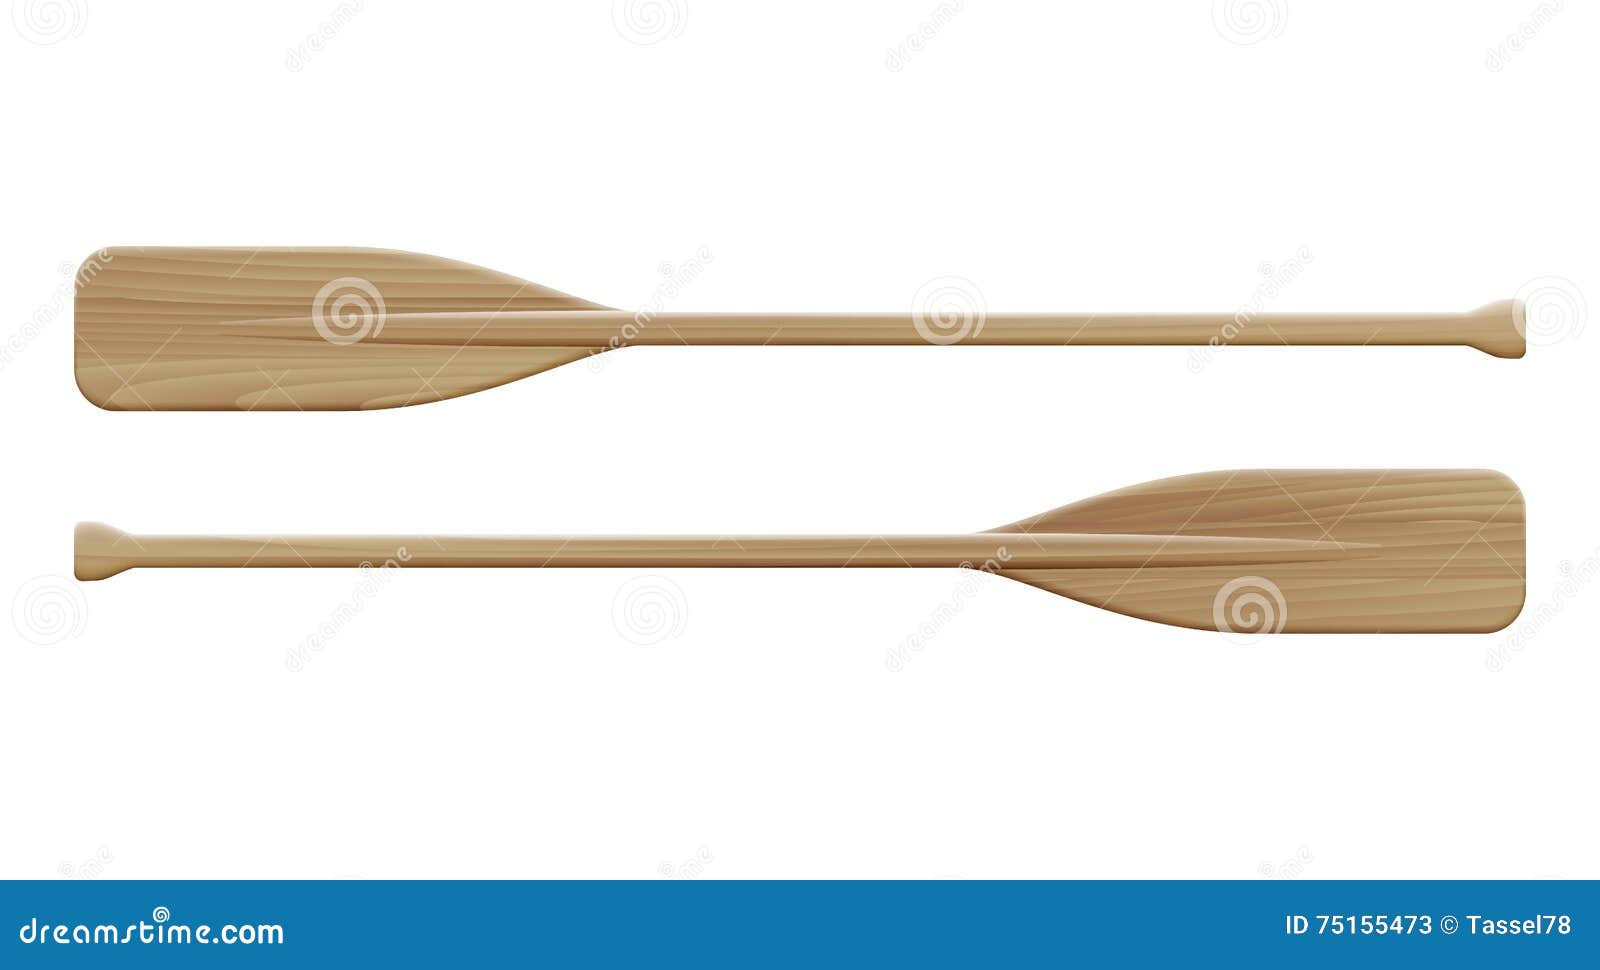 two wooden paddles. sport oars.